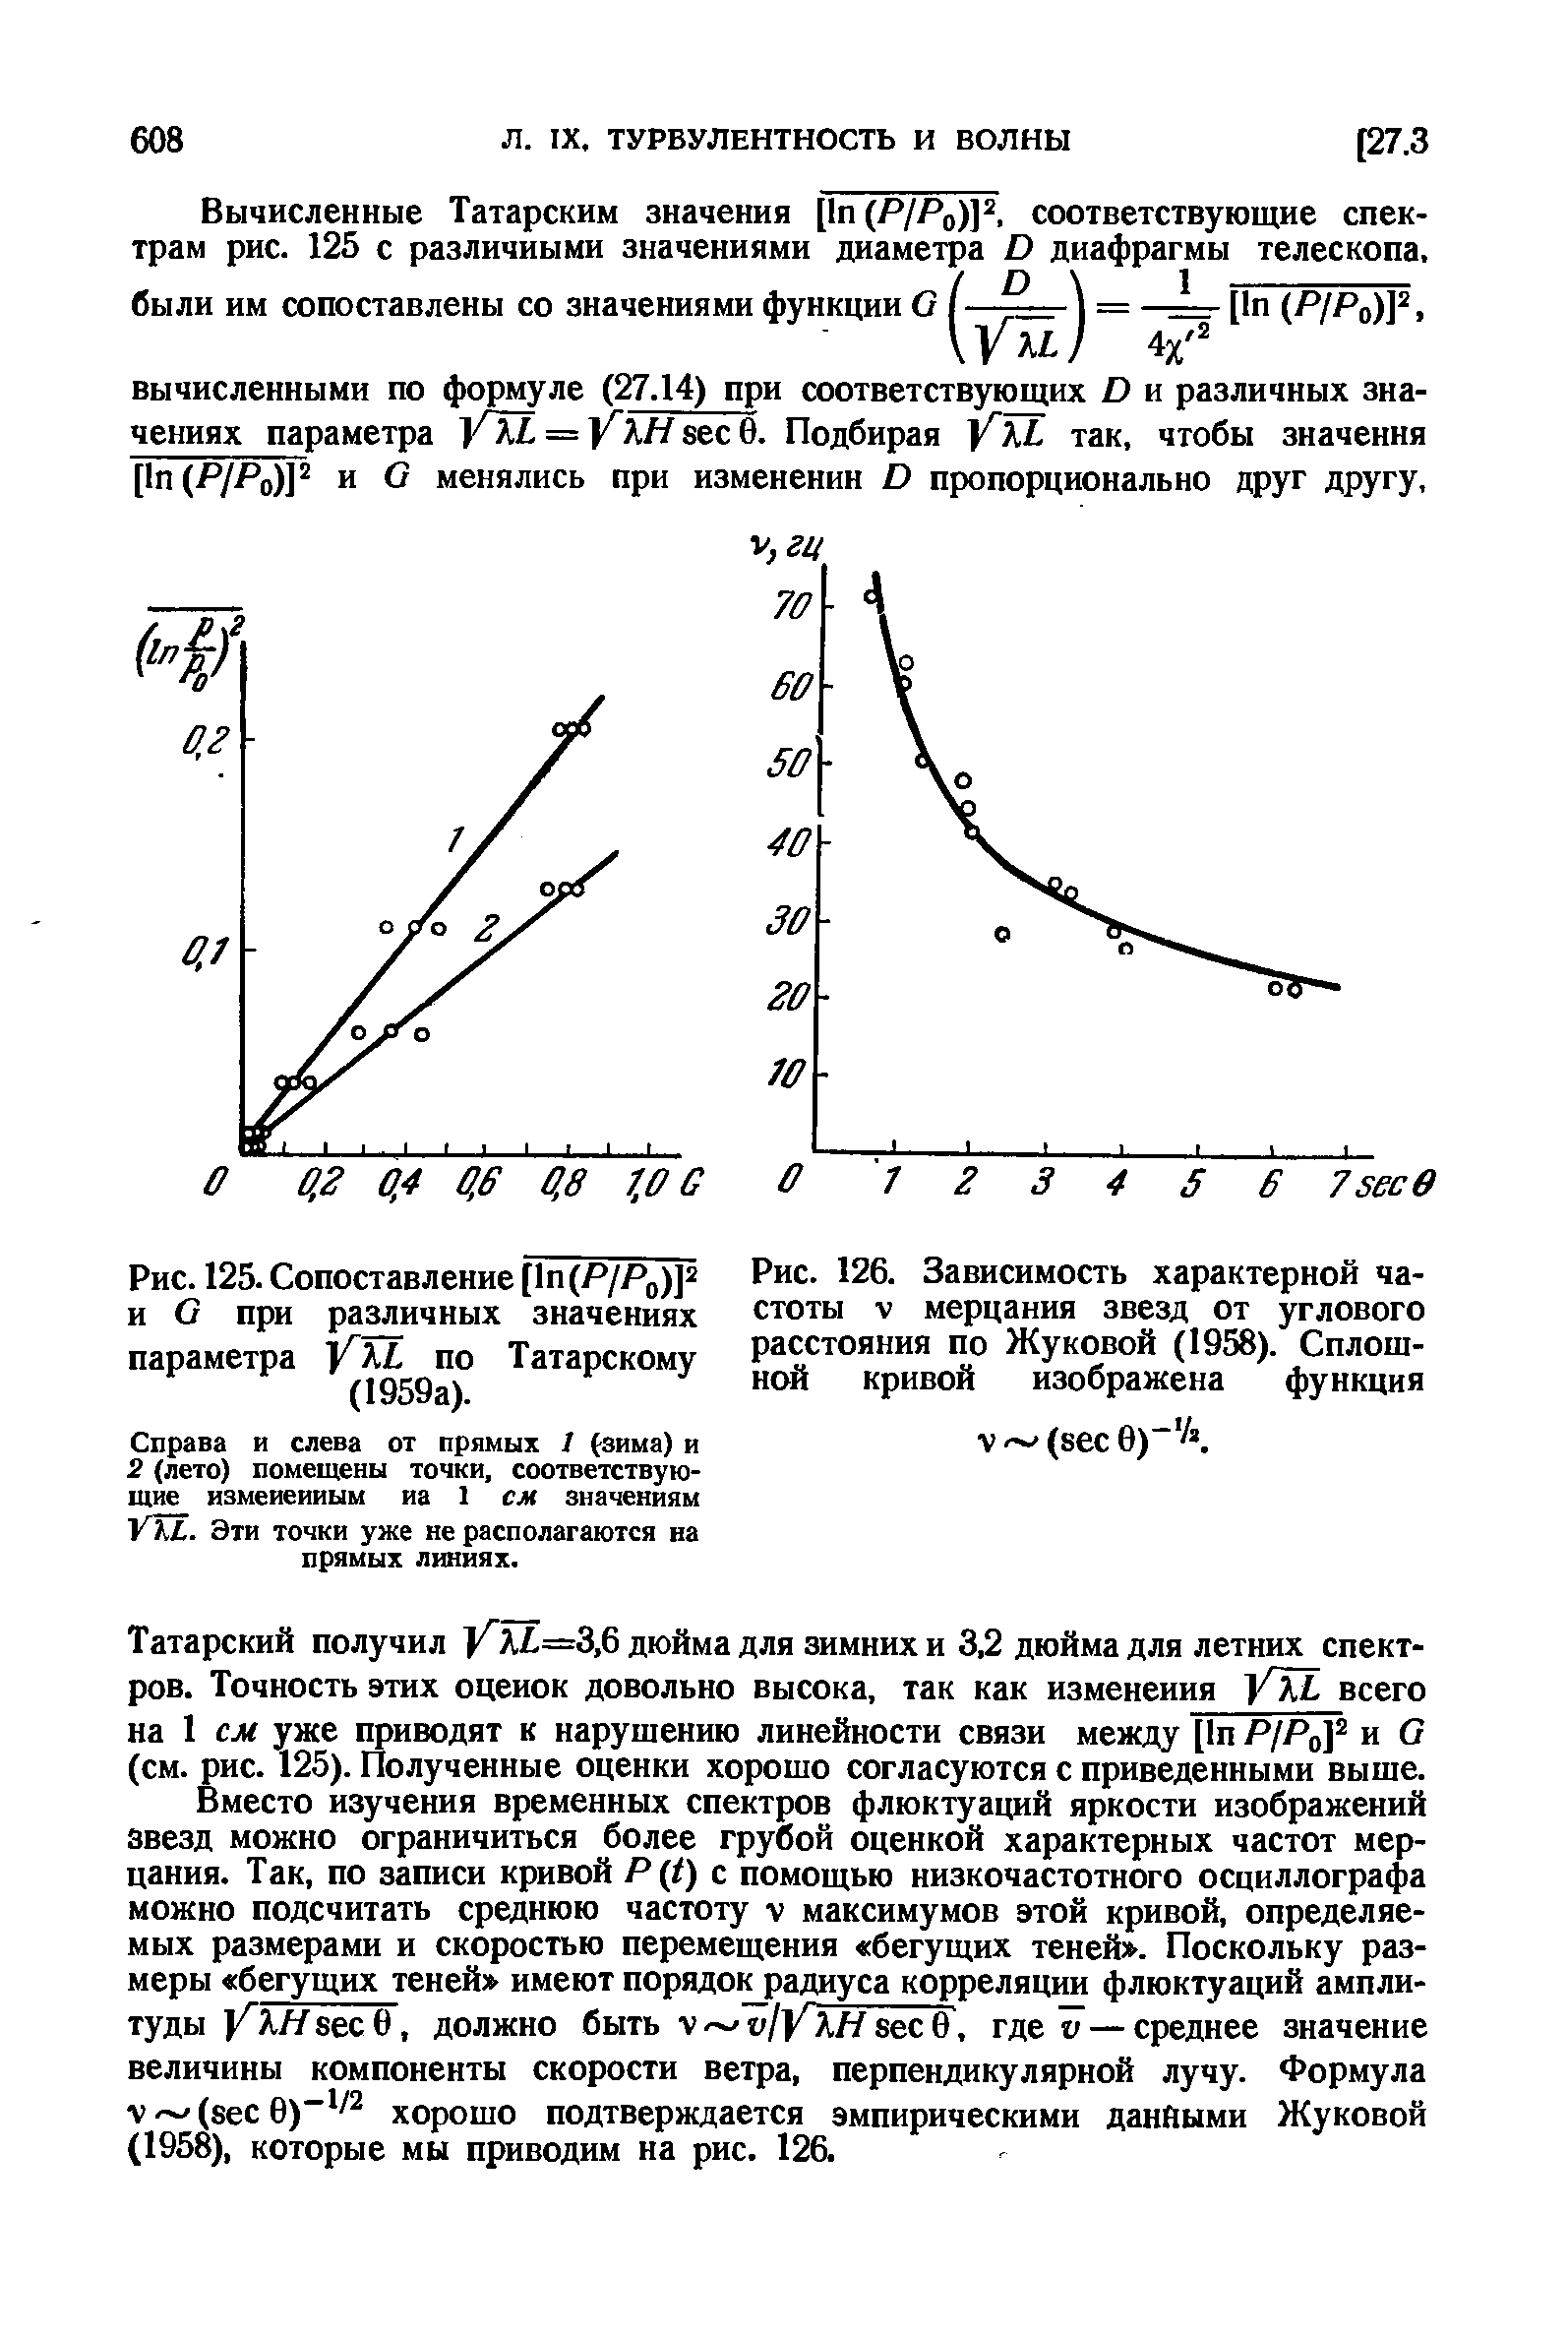 Рис. 126. Зависимость характерной частоты V мерцания звезд от <a href="/info/362012">углового расстояния</a> по Жуковой (1958). Сплошной кривой изображена функция
